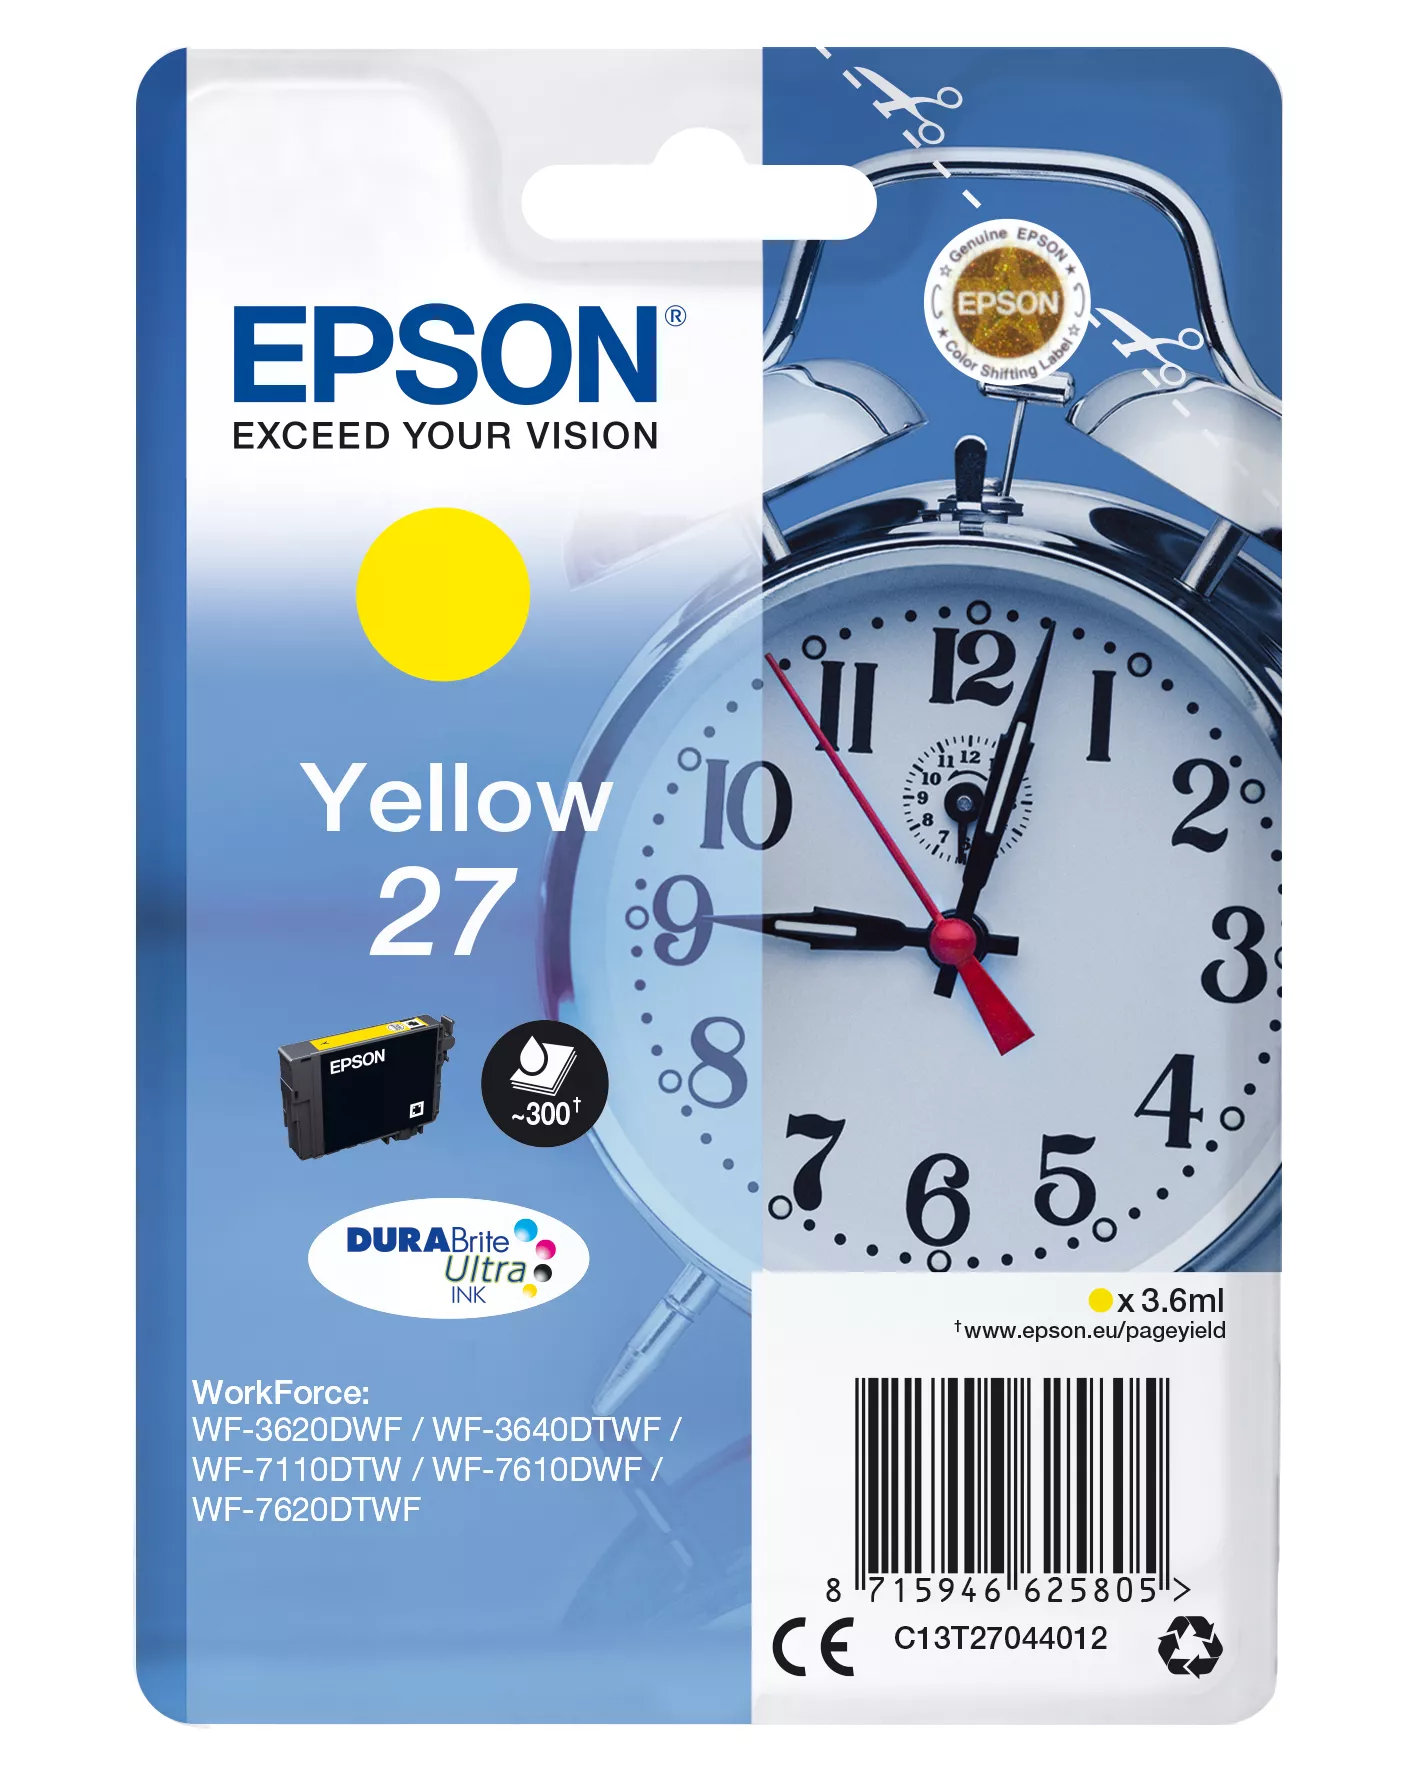 Achat EPSON 27 cartouche d encre jaune capacité standard 3.6ml au meilleur prix